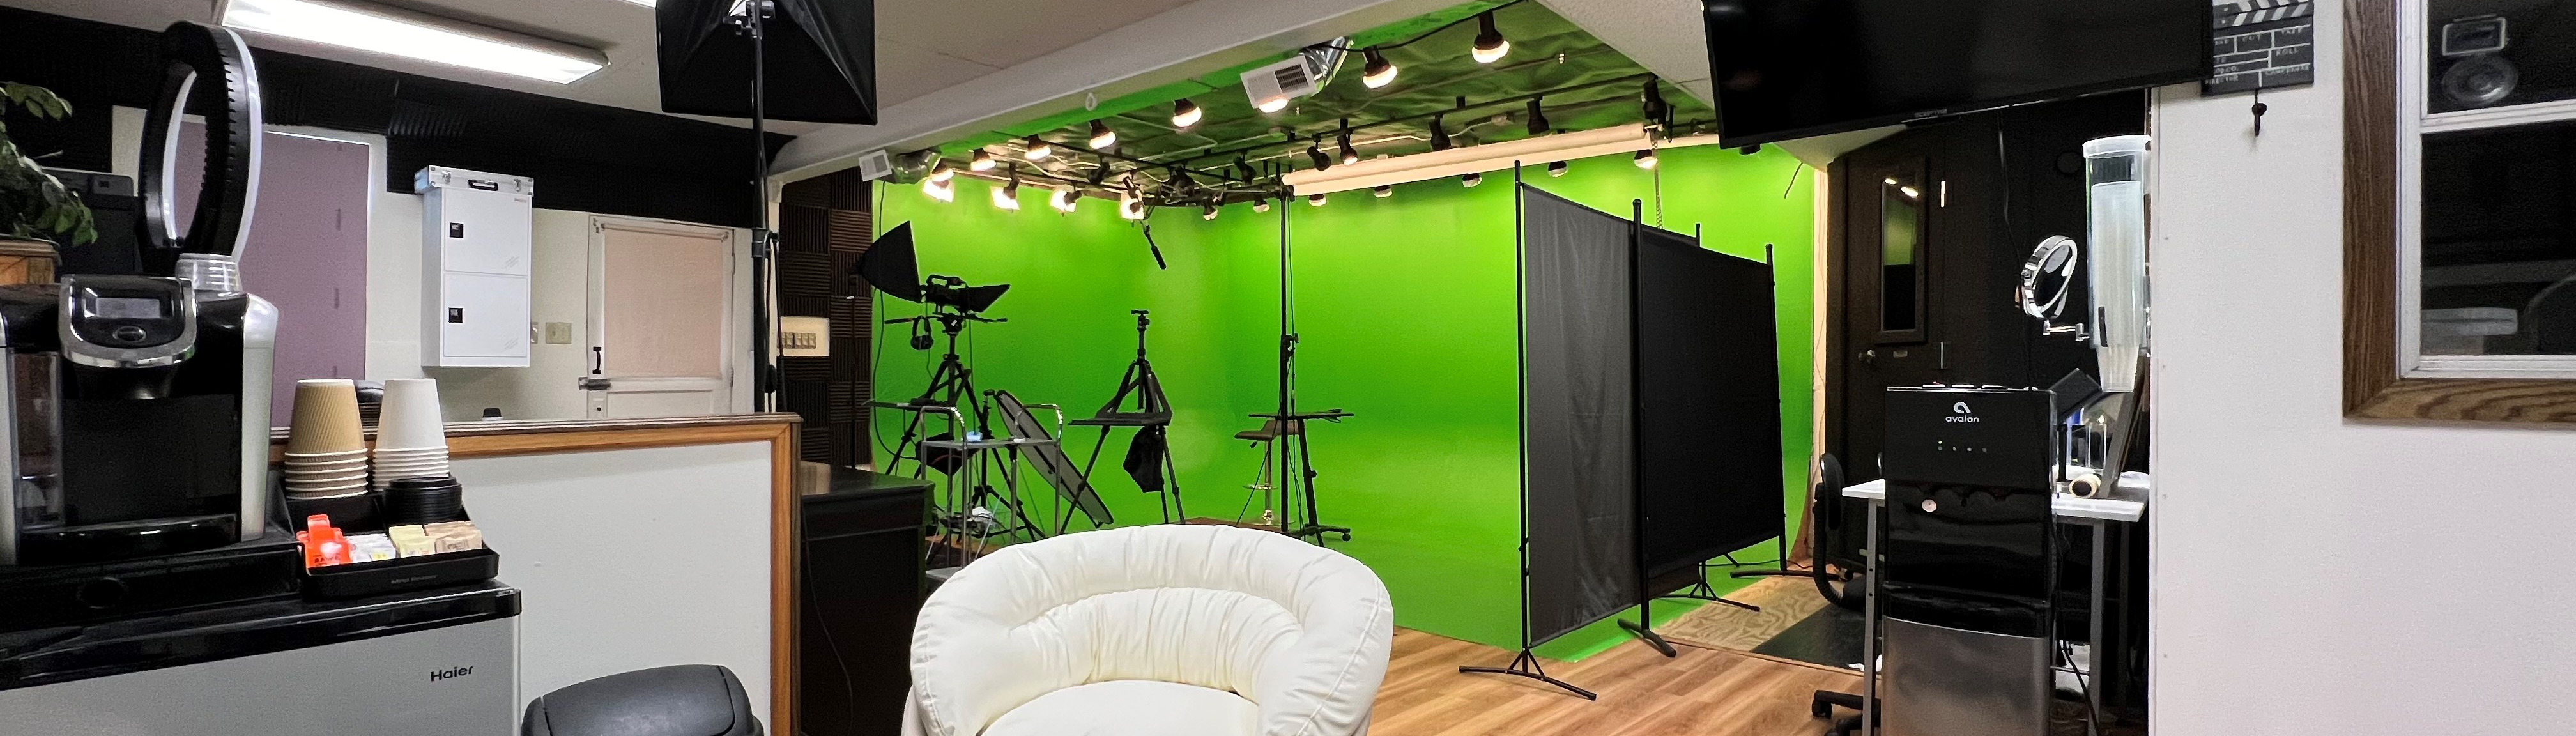 CN Video Studio C - Video Studio Rental with green screen